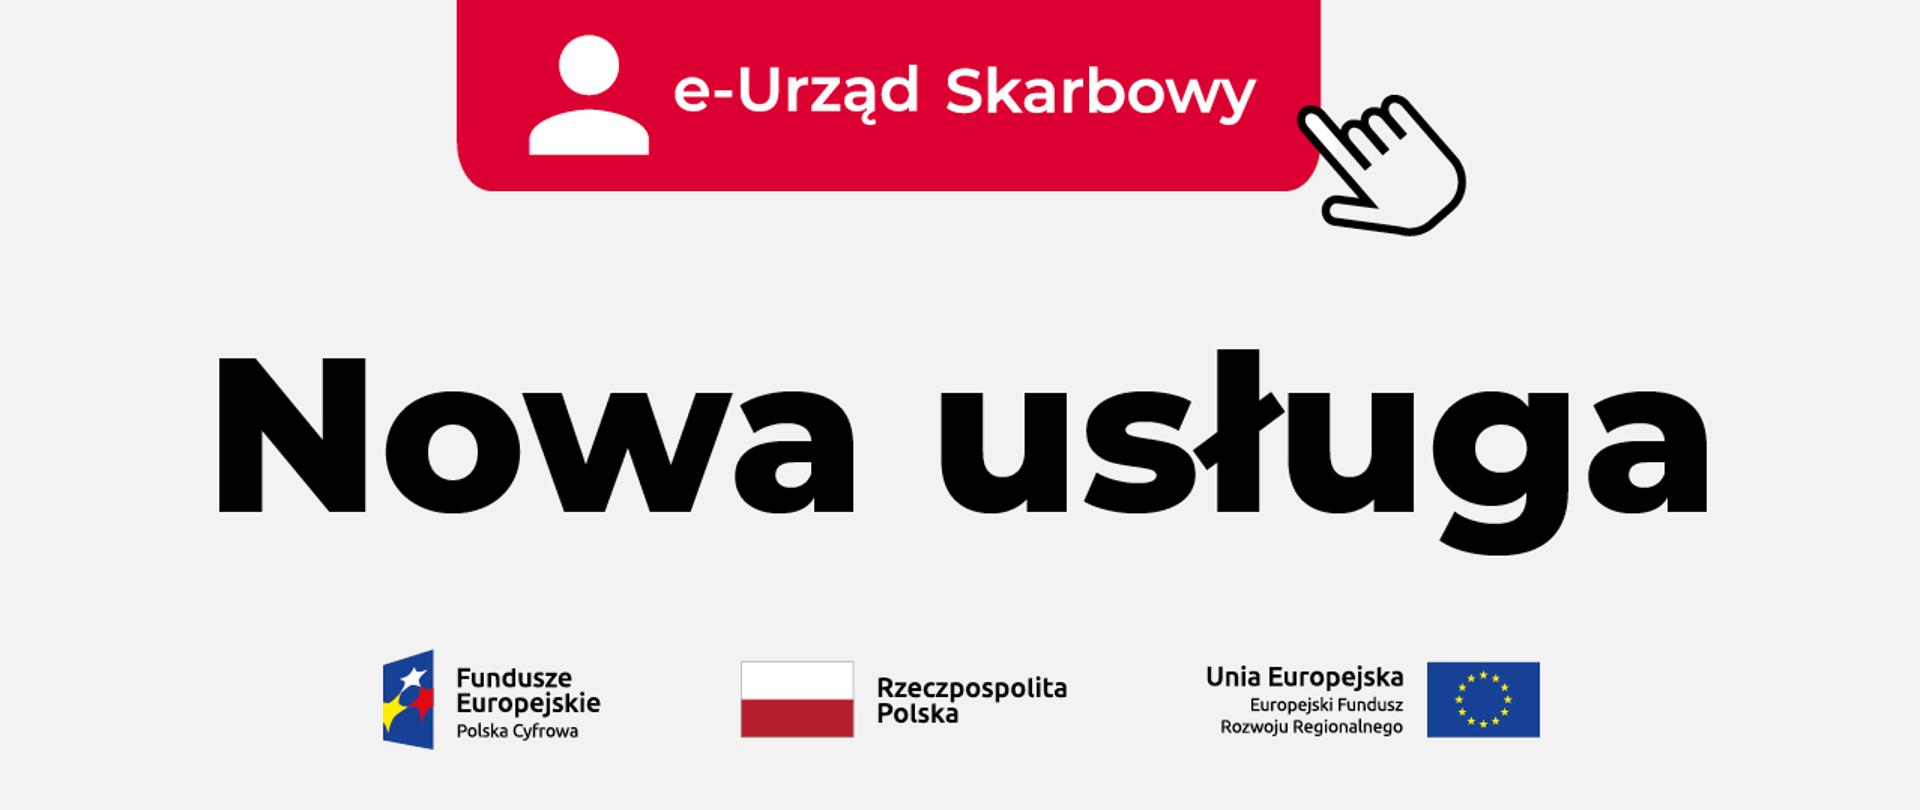 baner z napisem e-Urząd Skarbowy, nowa usługa. Na dole logotypy unijne.